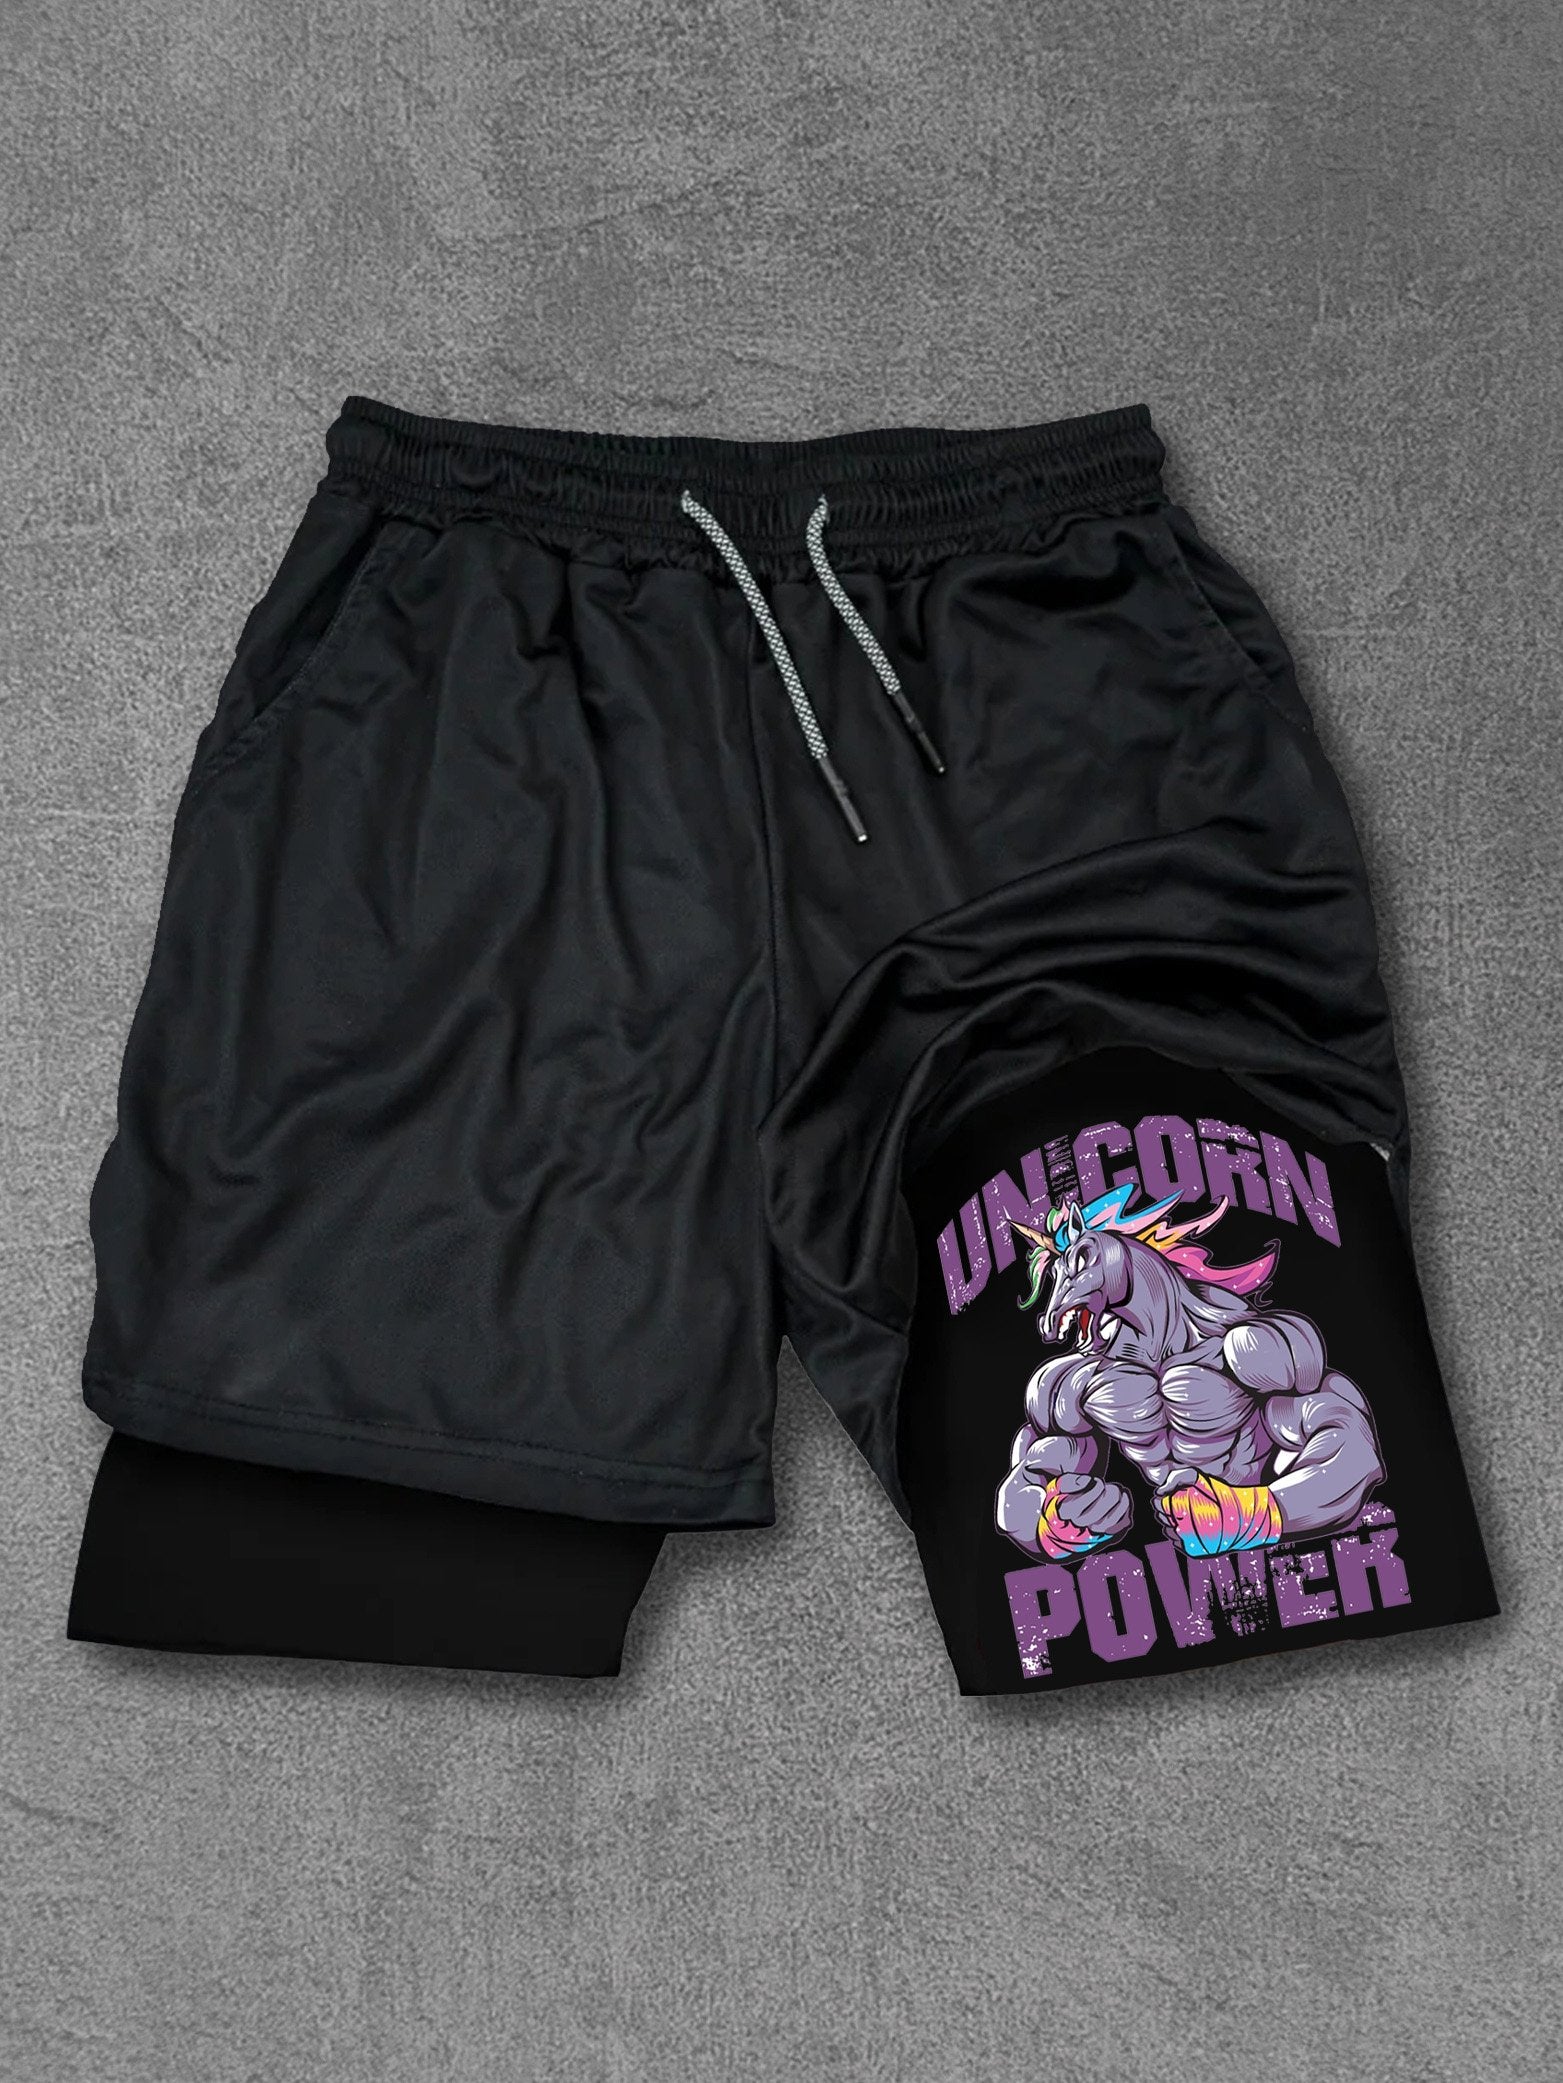 unicron power Performance Training Shorts